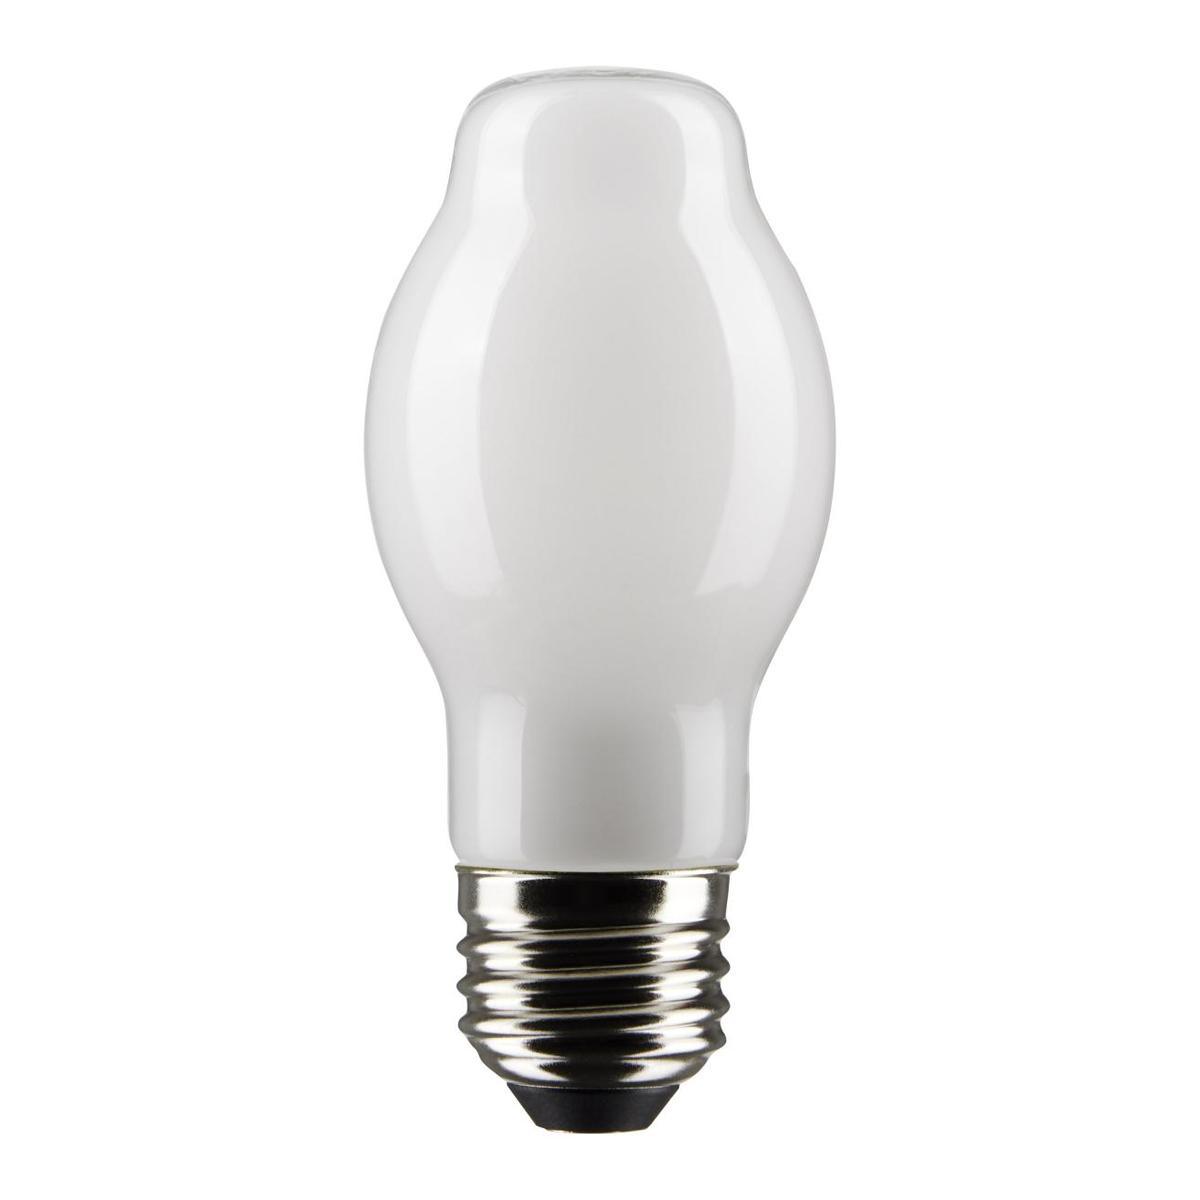 BT15 Bulged Tube LED Bulb, 8 Watt, 800 Lumens, 2700K, E26 Medium Base, Frosted Finish, Pack Of 2